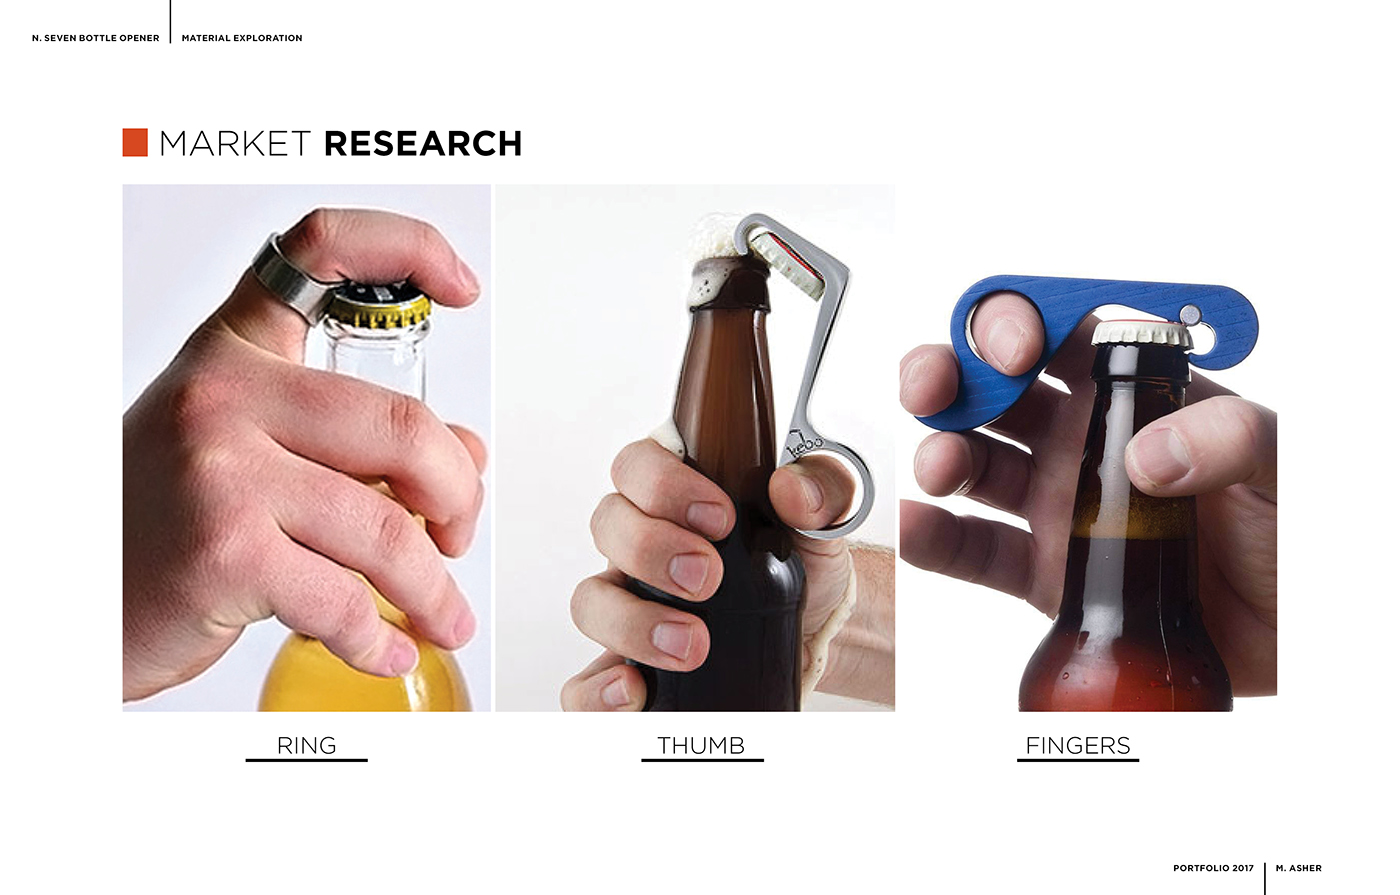 Carbon Fiber material exploration bottle opener industrial design 